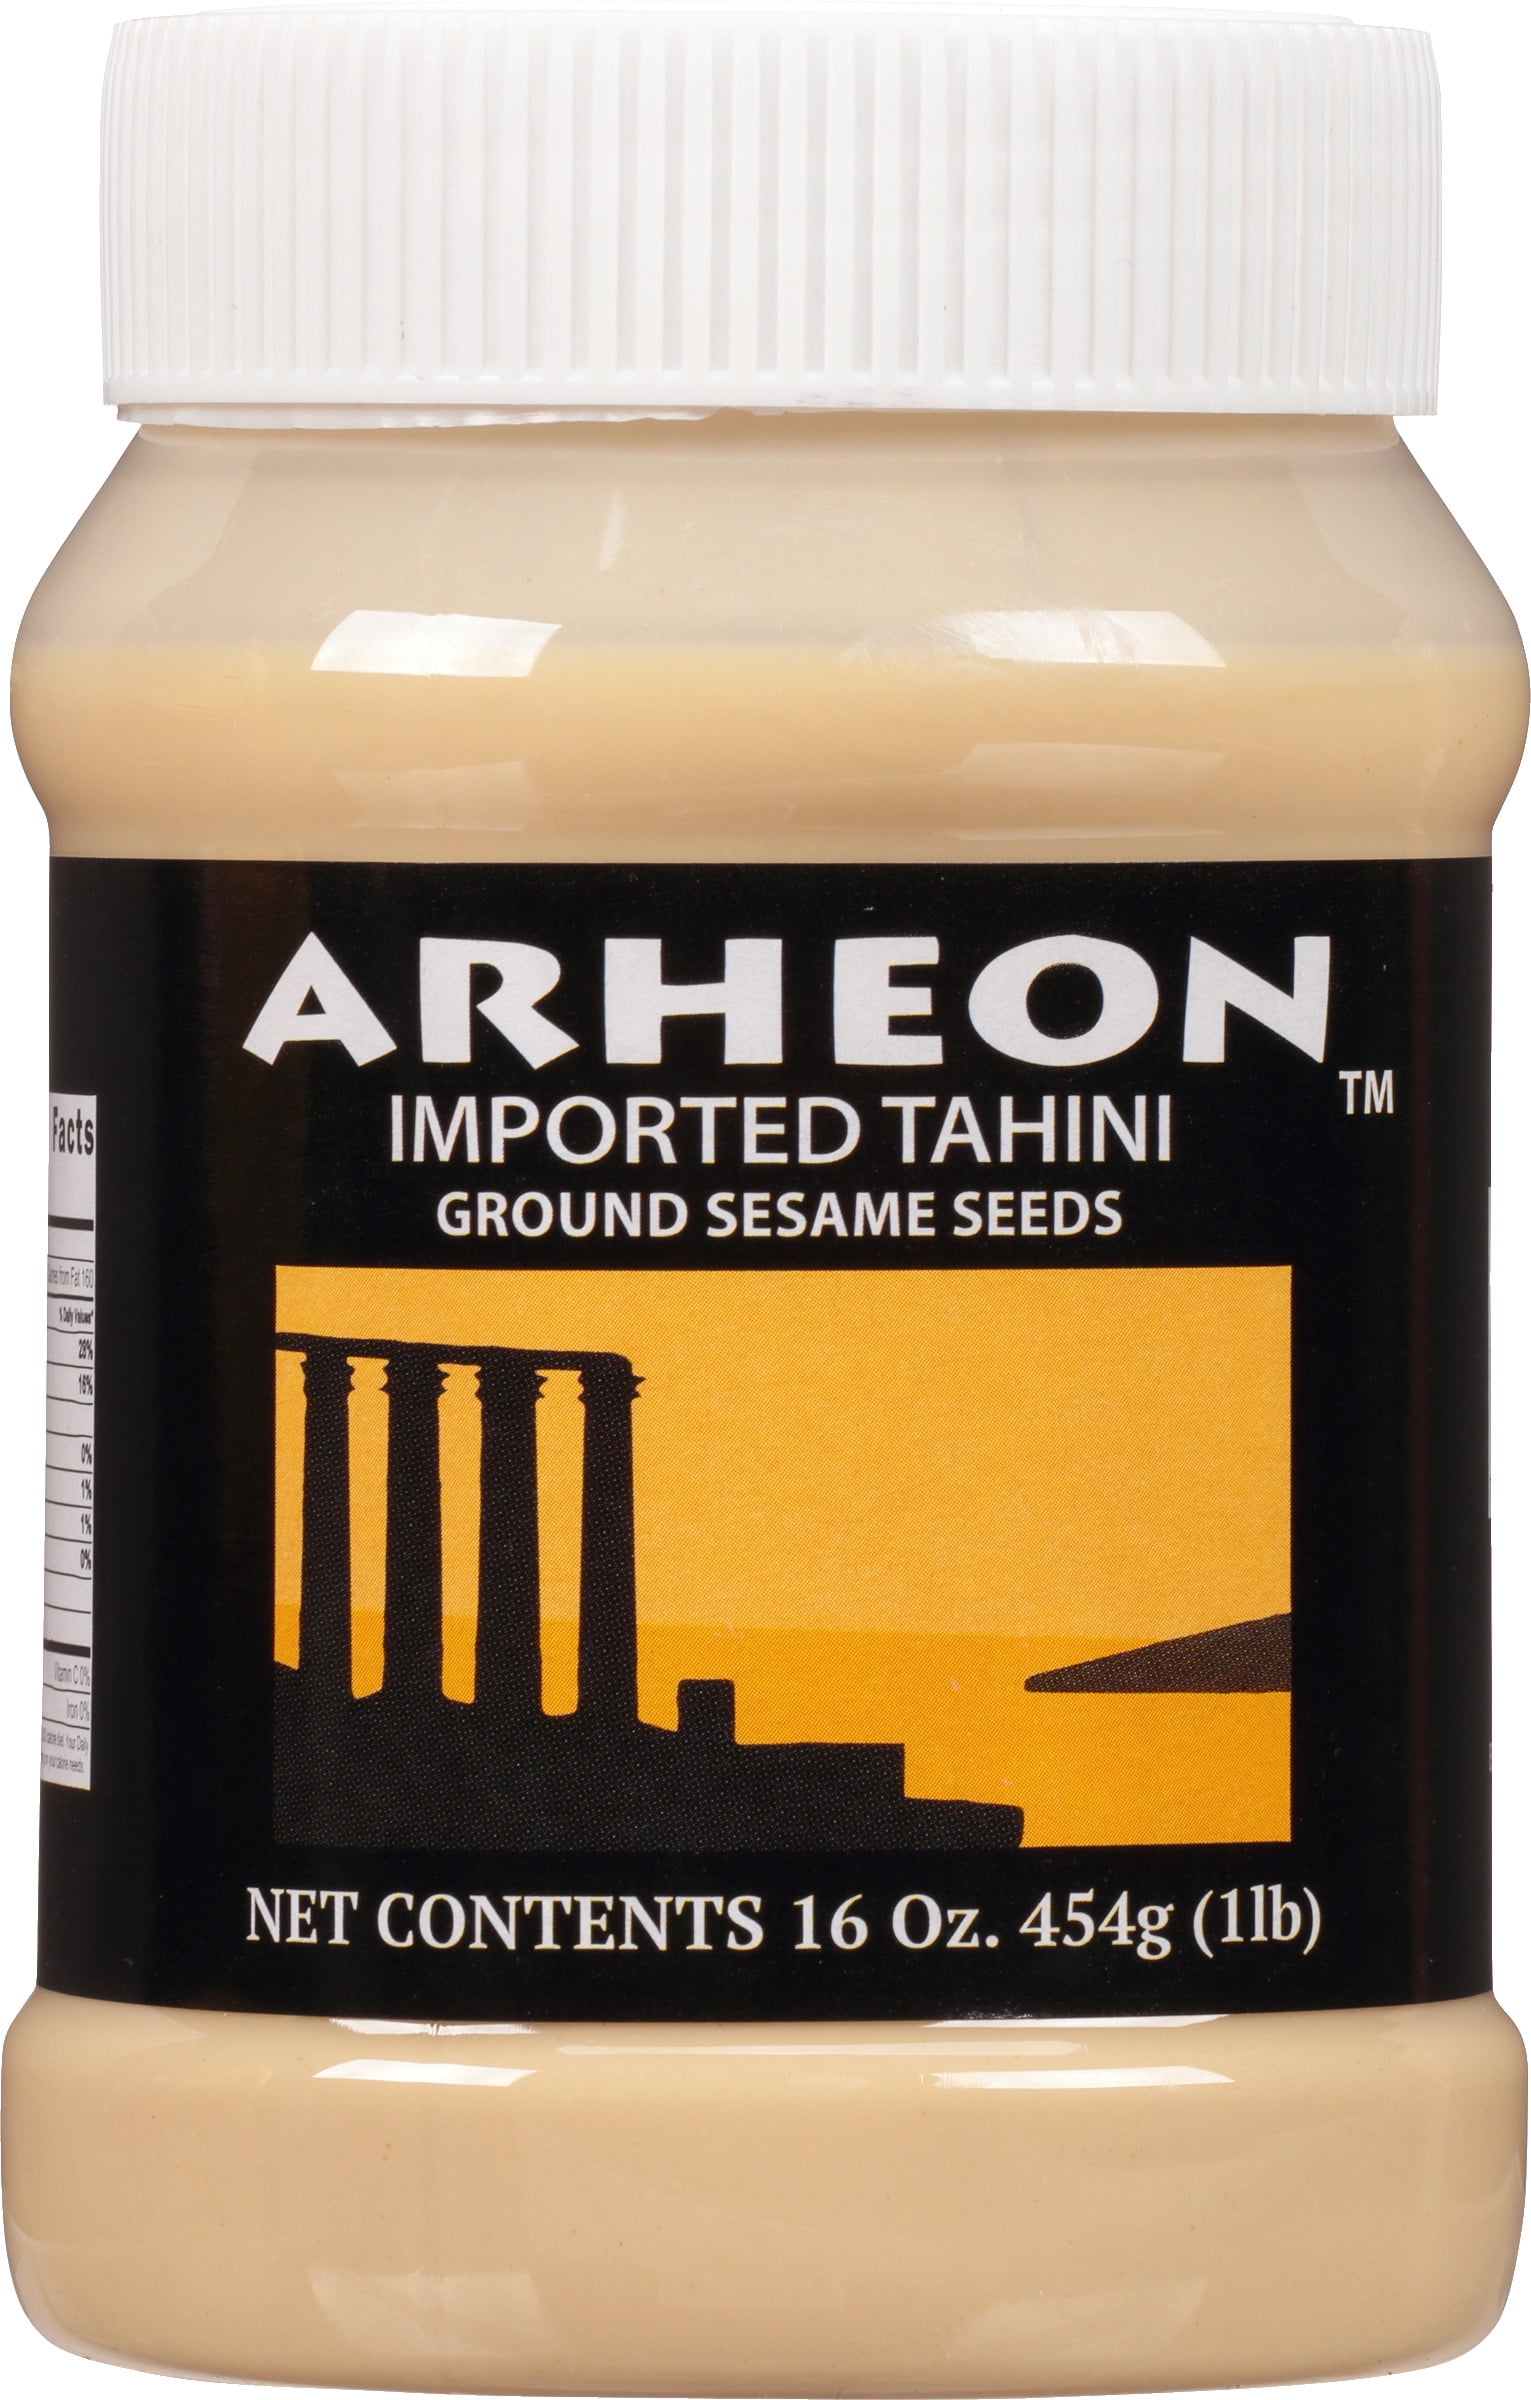 Arheon Imported Tahini Ground Sesame Seeds, 16 oz